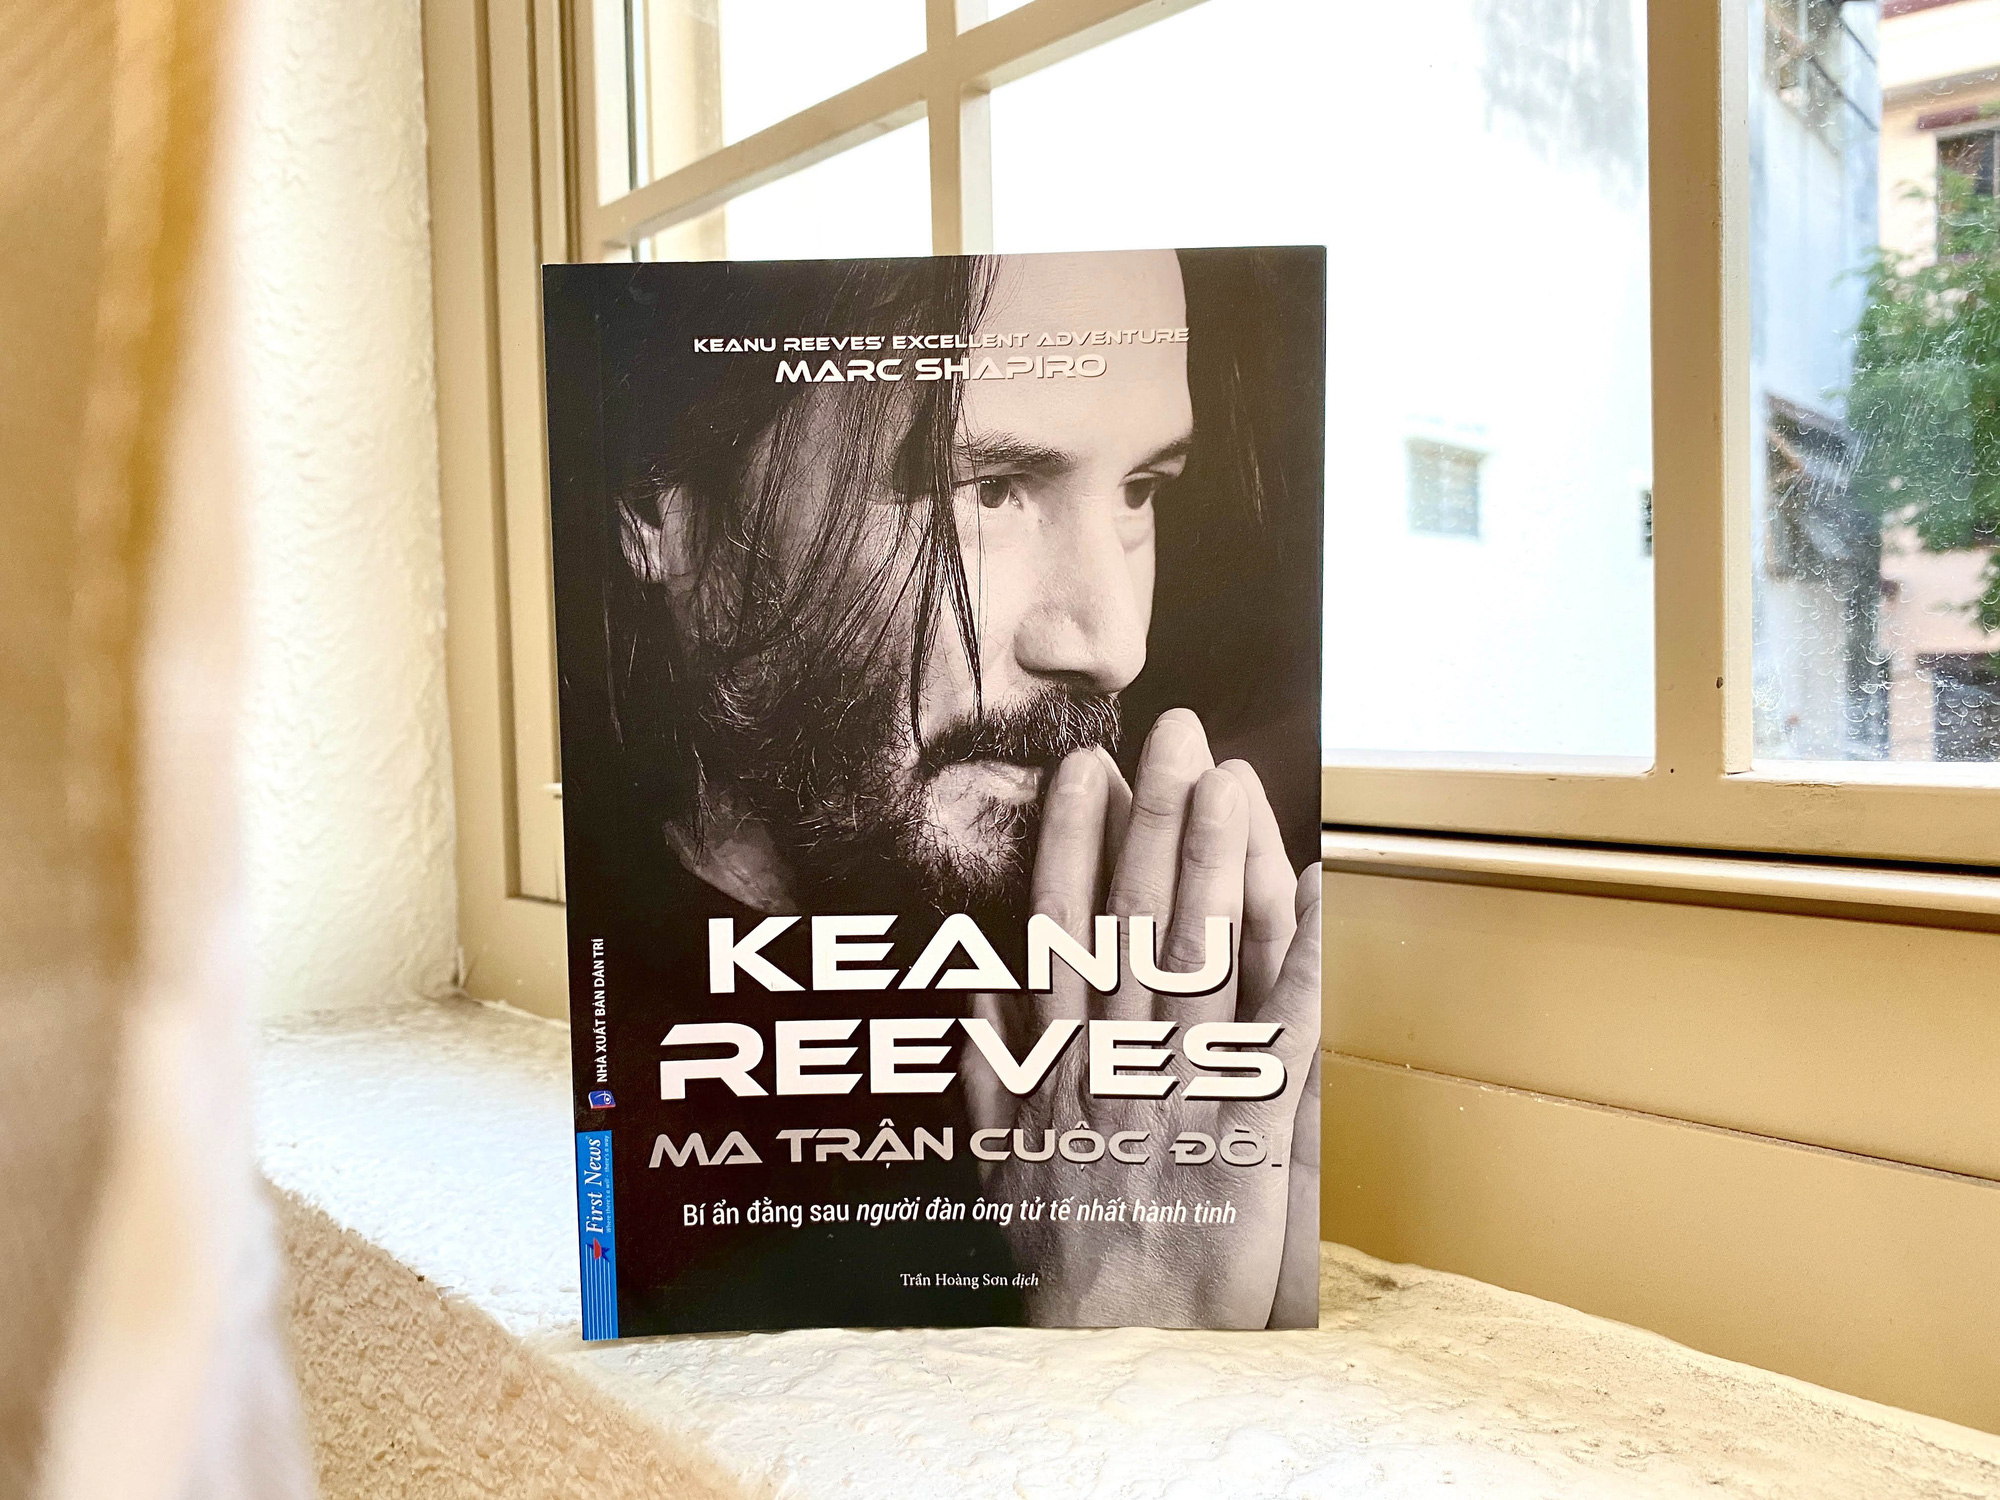 'Ma trận cuộc đời Keanu Reeves' – giải mã về nam diễn viên bí ẩn nhất Hollywood - Ảnh 4.